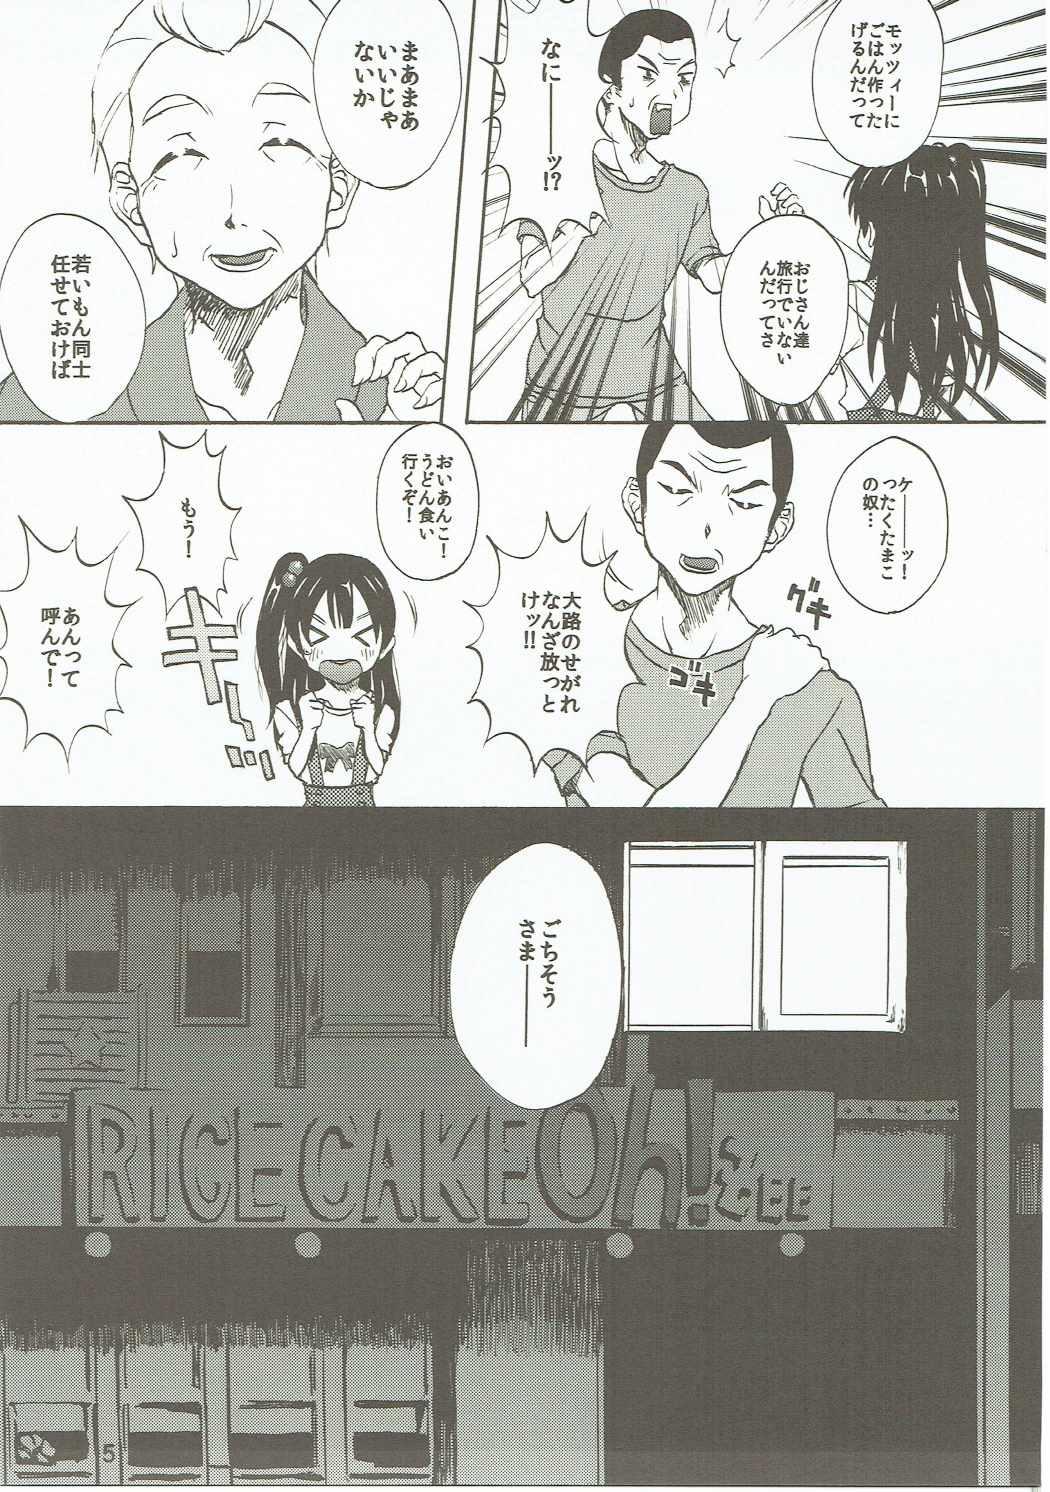 Fudendo Komata no Kireagatta Ii Tamako. - Tamako market Flashing - Page 4